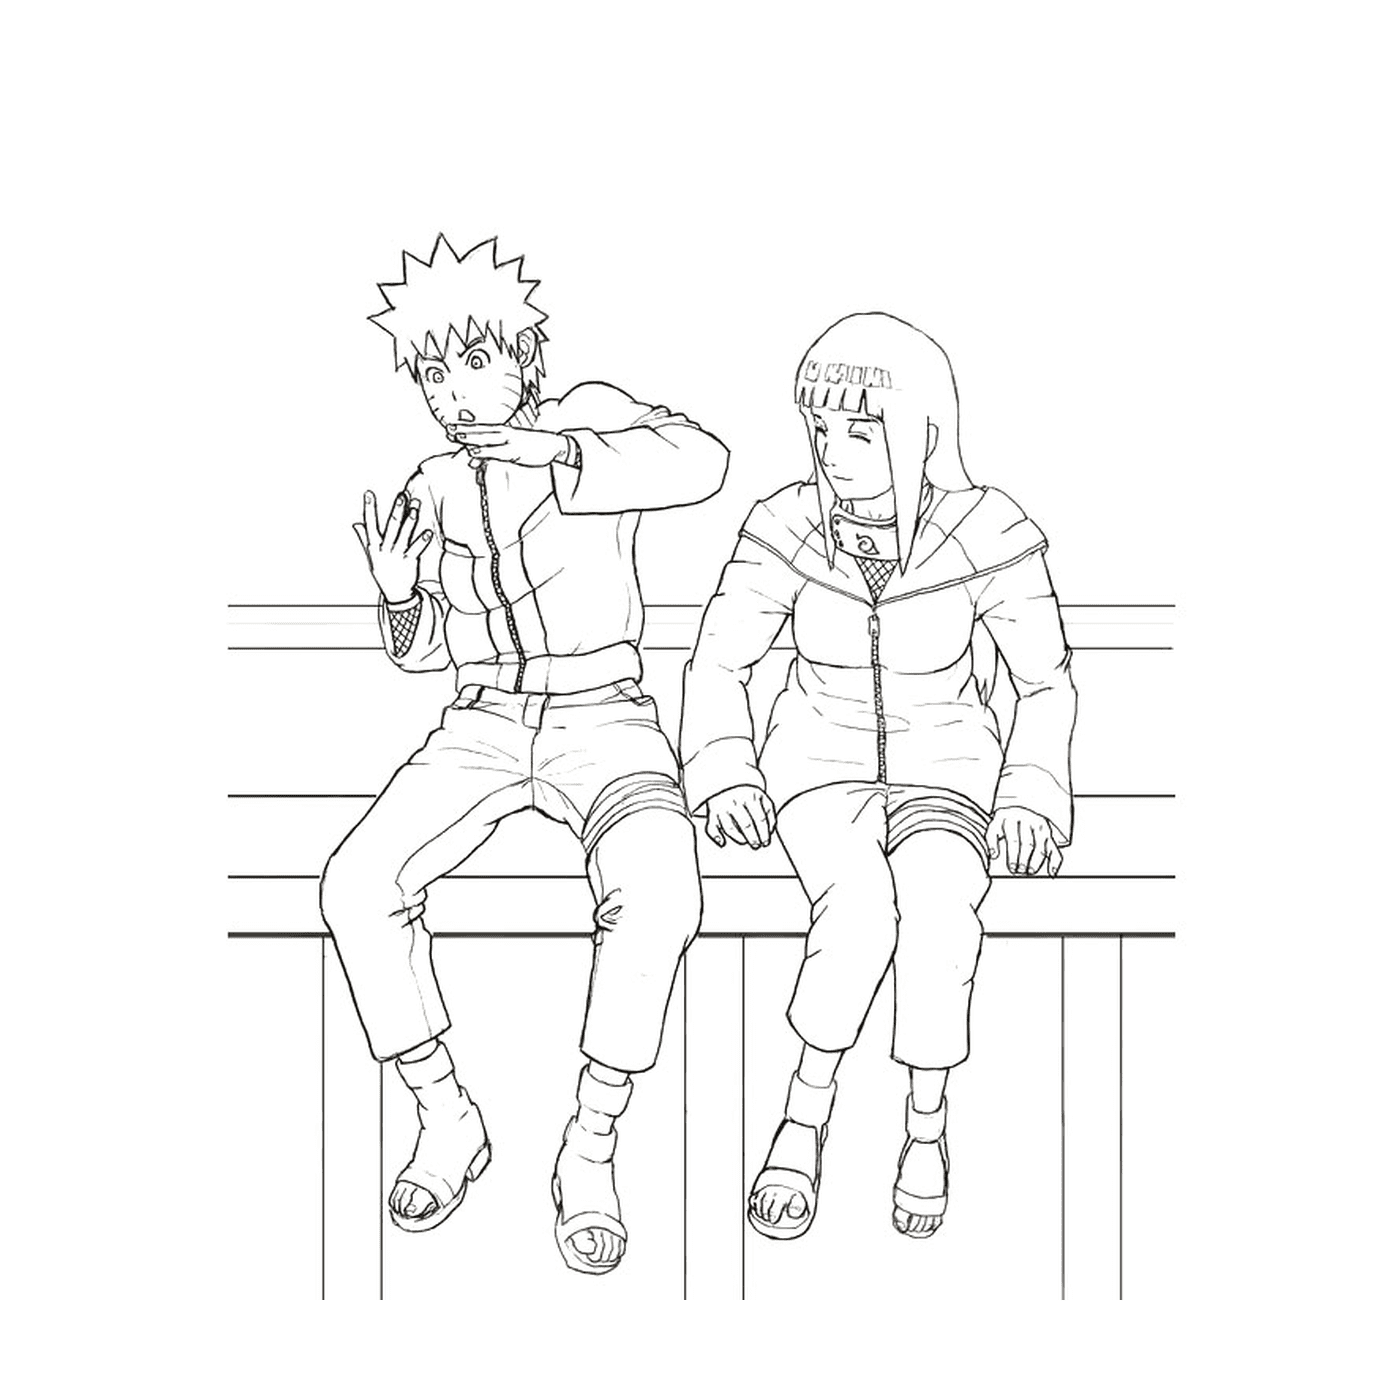   Un couple de personnes assises sur un banc en bois 